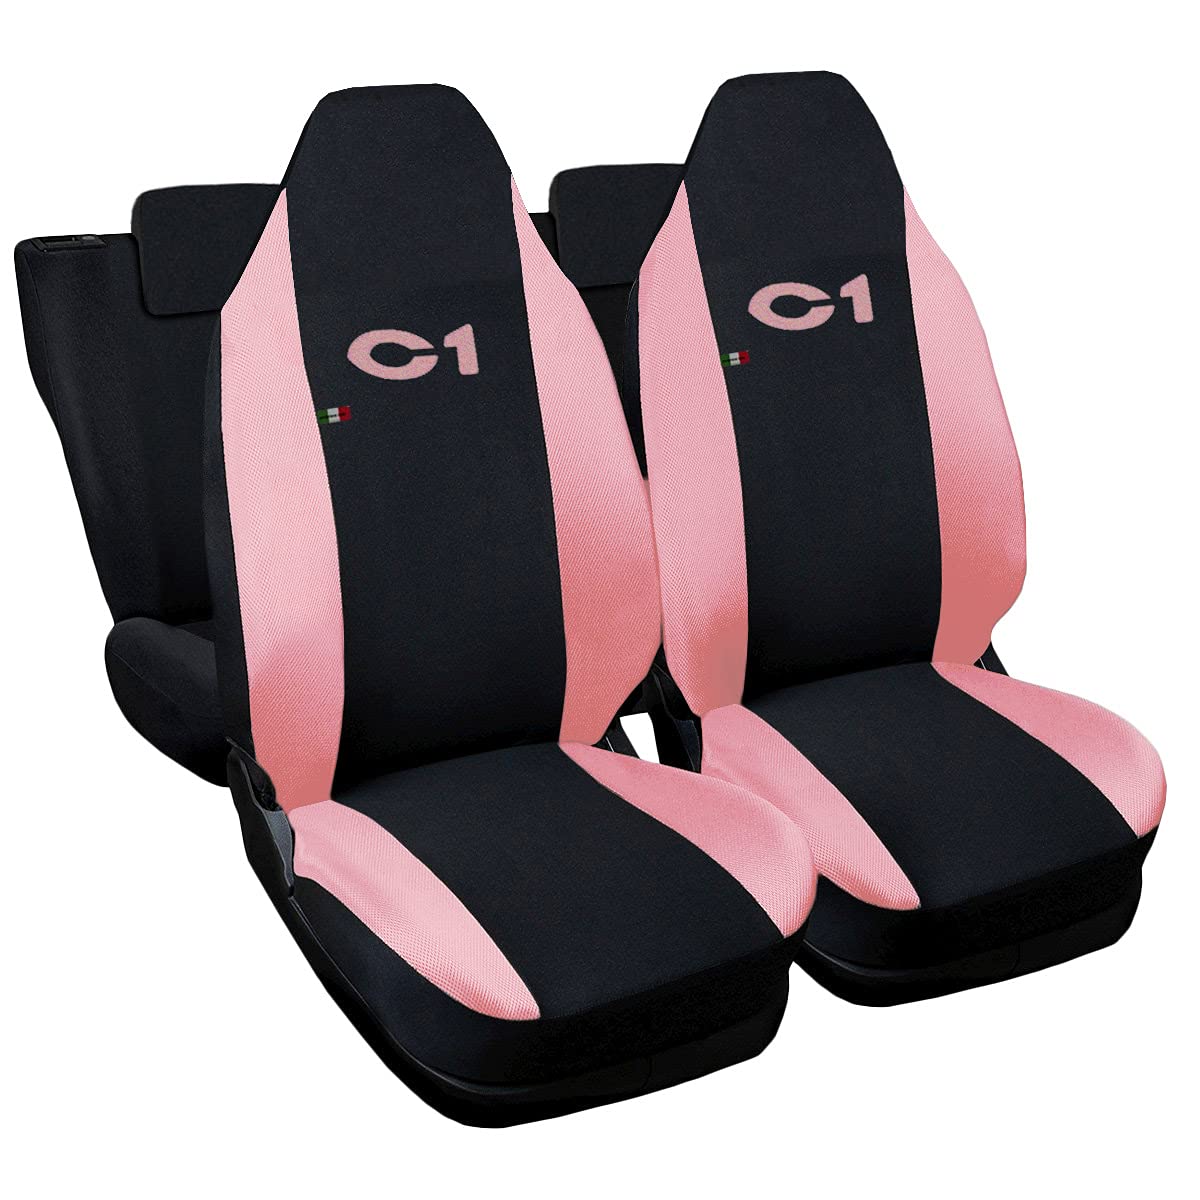 Lupex Shop Citroen C1 zweifarbige Sitzüberzüge (schwarz - rosa) Frau Zusammenstellung von Lupex Shop